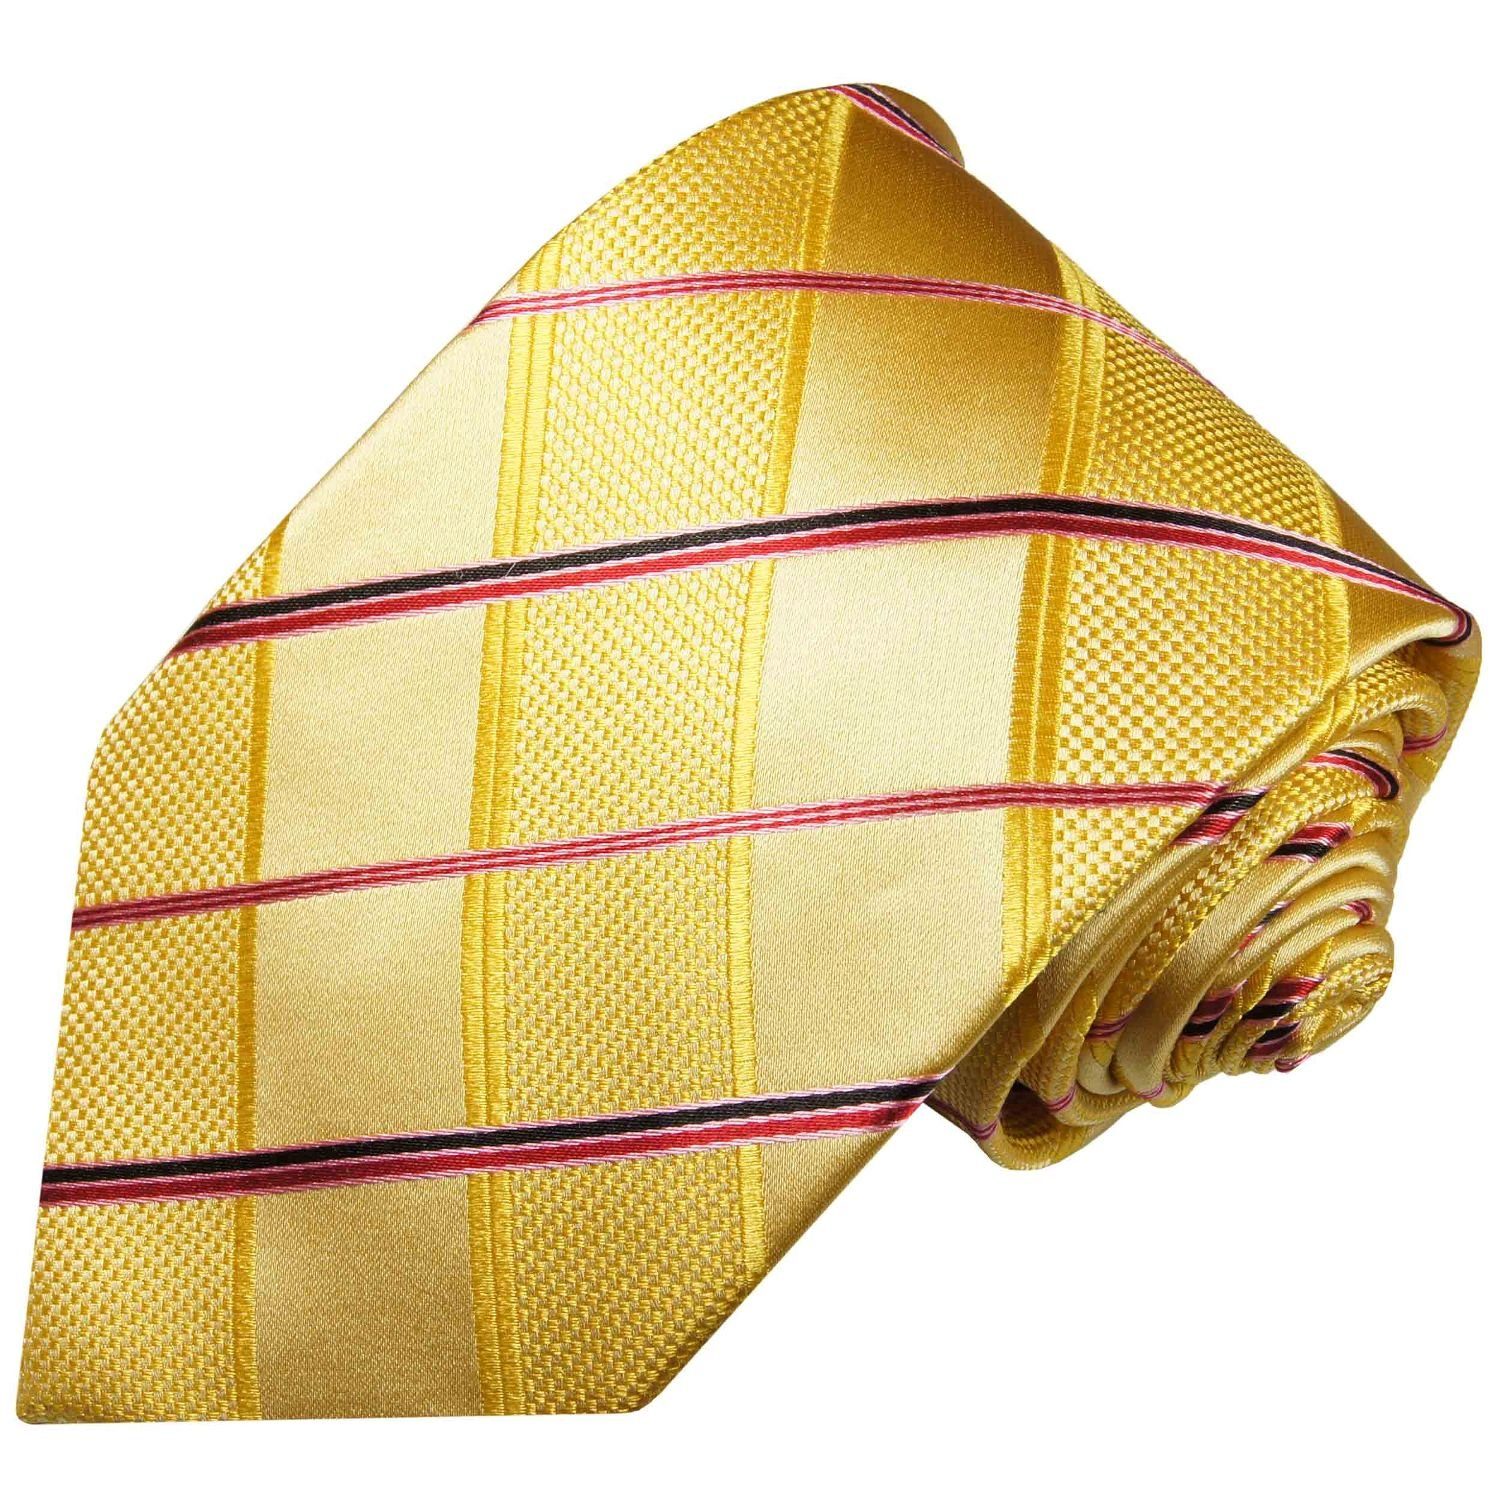 Paul Malone Krawatte Designer Seidenkrawatte Herren Schlips Karo gestreift 100% Seide Schmal (6cm), gold gelb pink 538